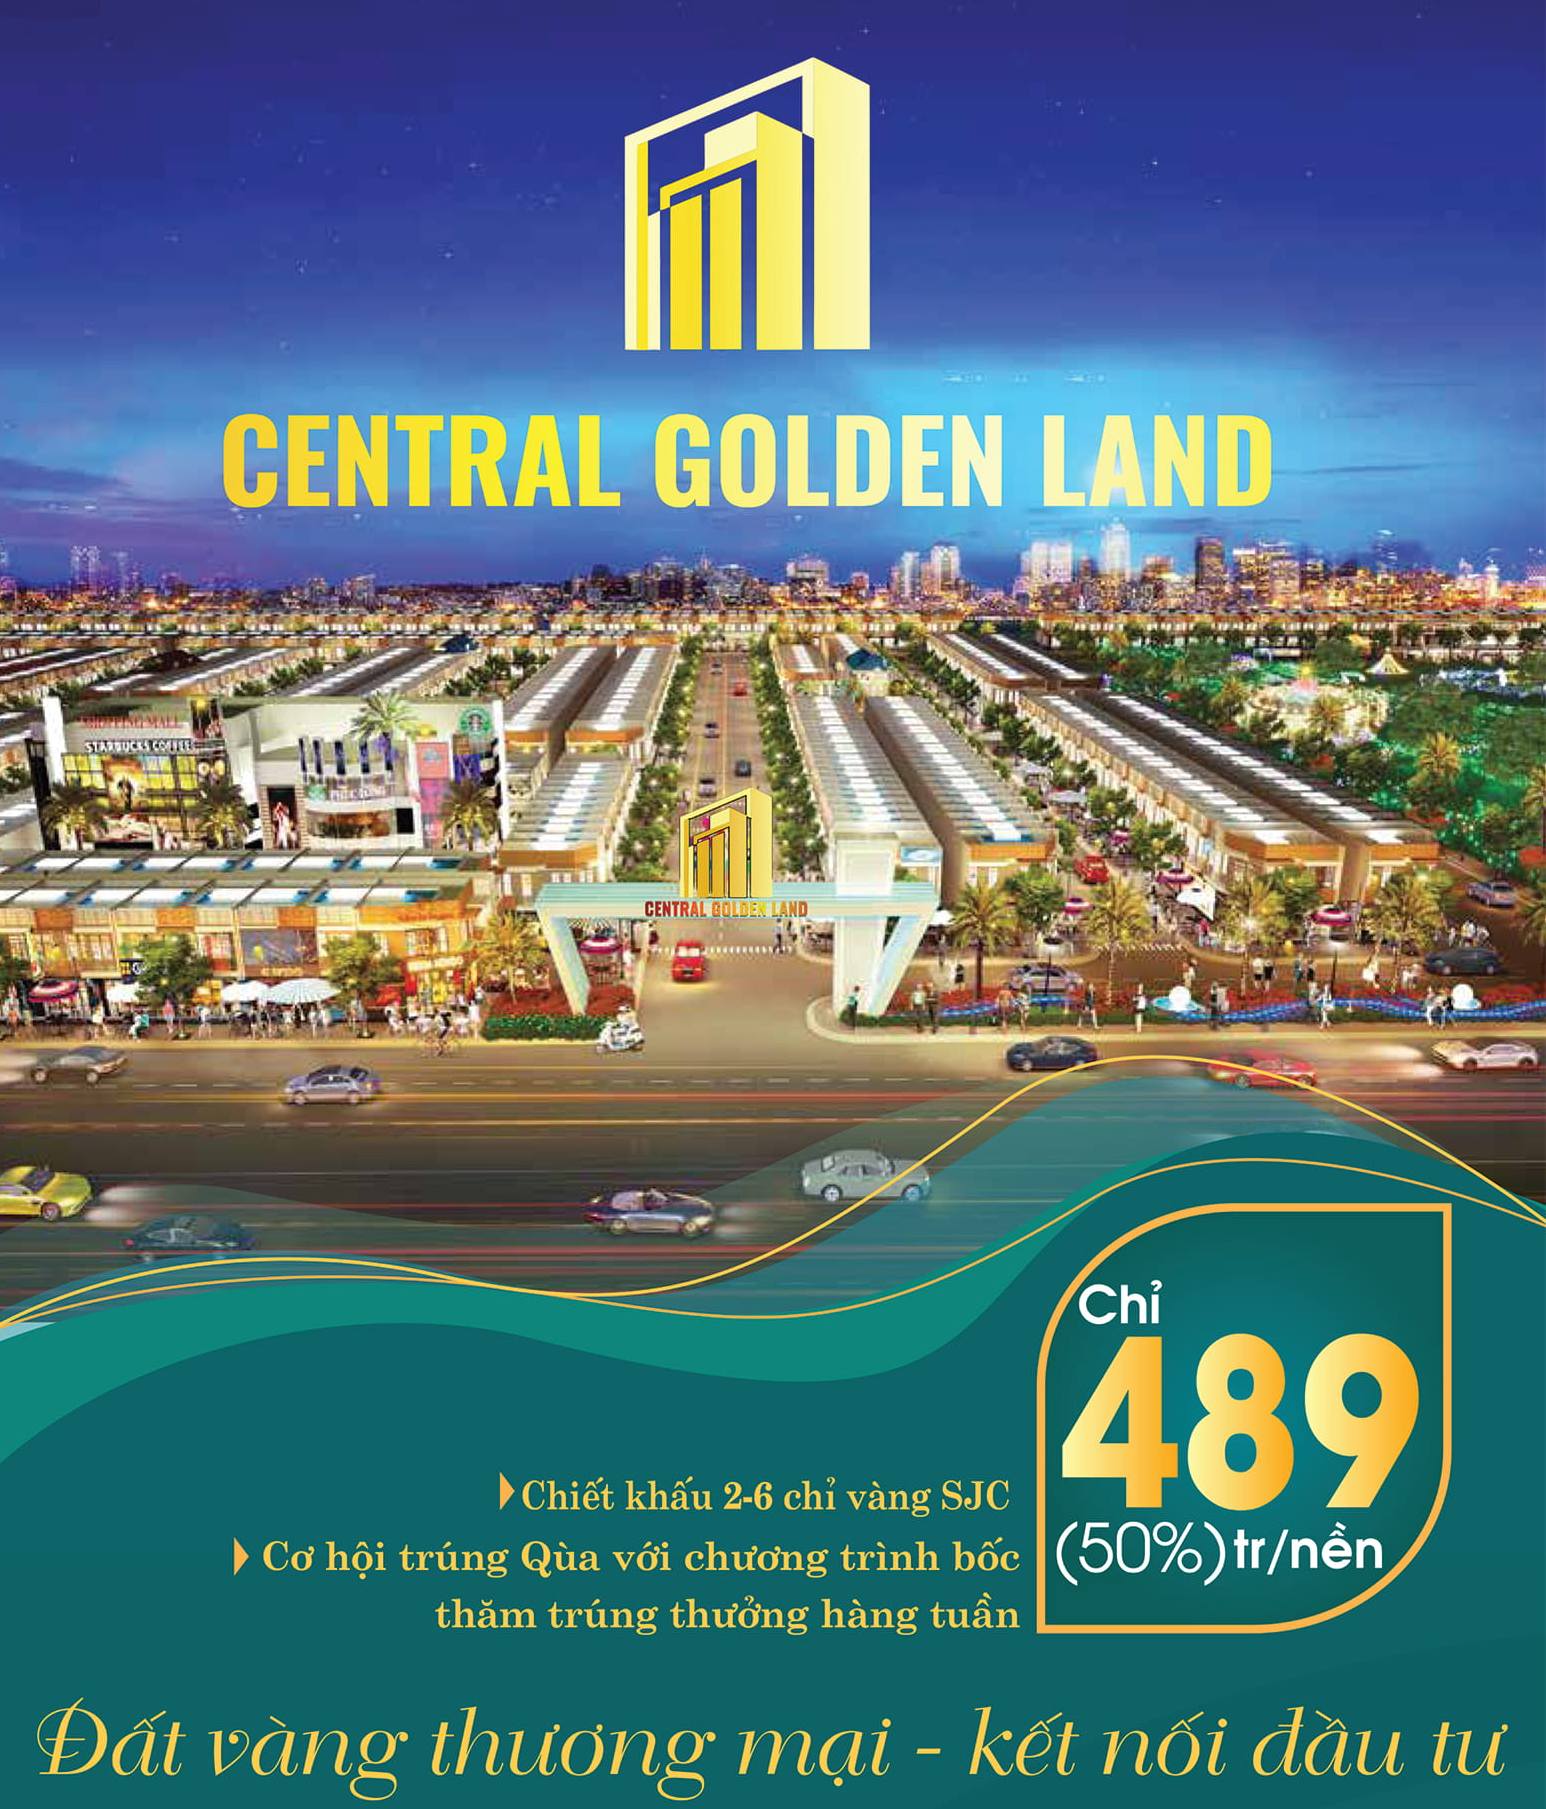 Chính sách bán hàng đợt 1 tại dự án Central Golden Land 